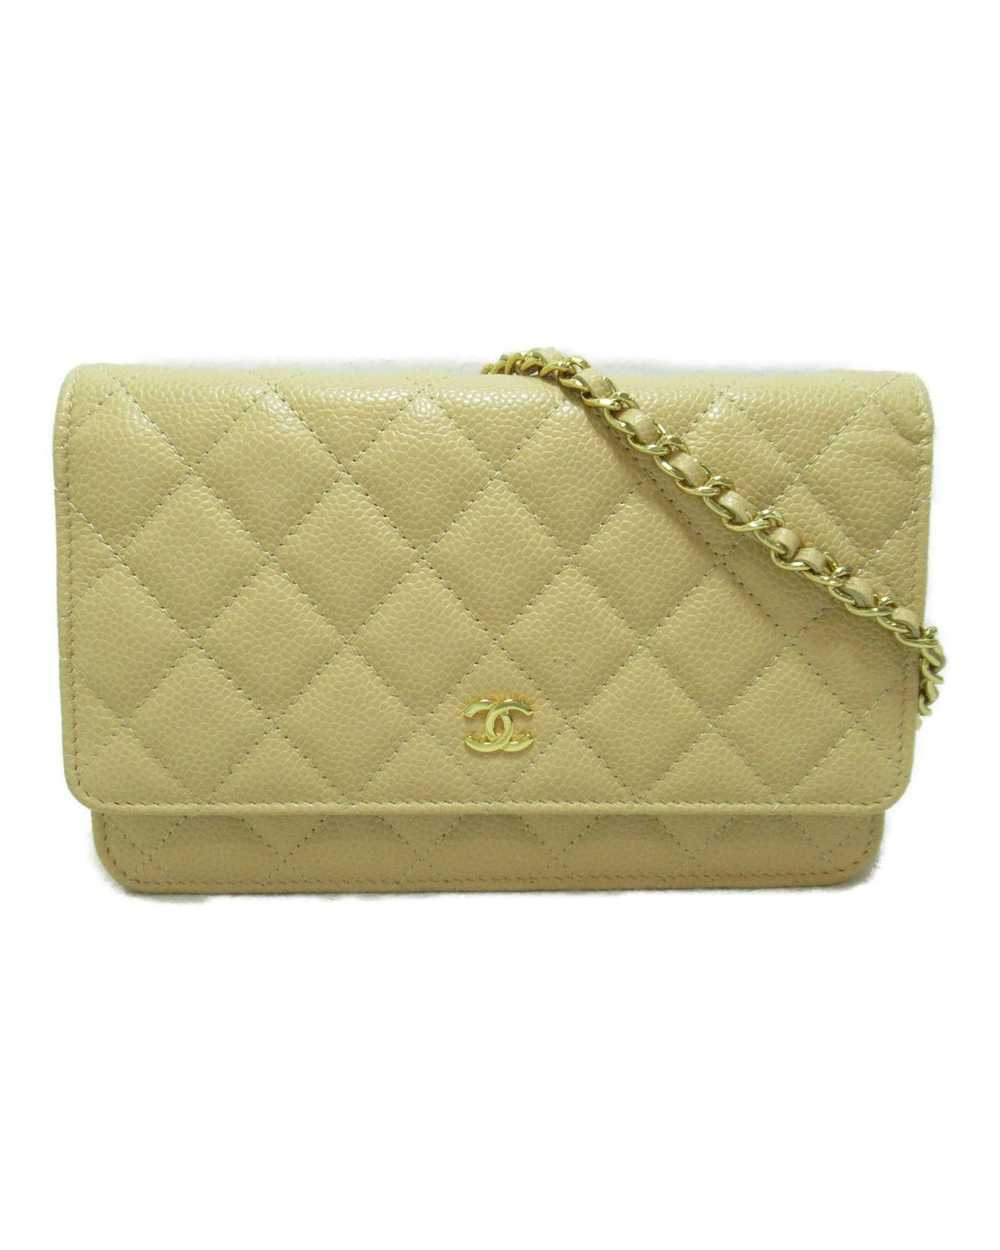 Chanel Beige Leather Shoulder Bag - image 1